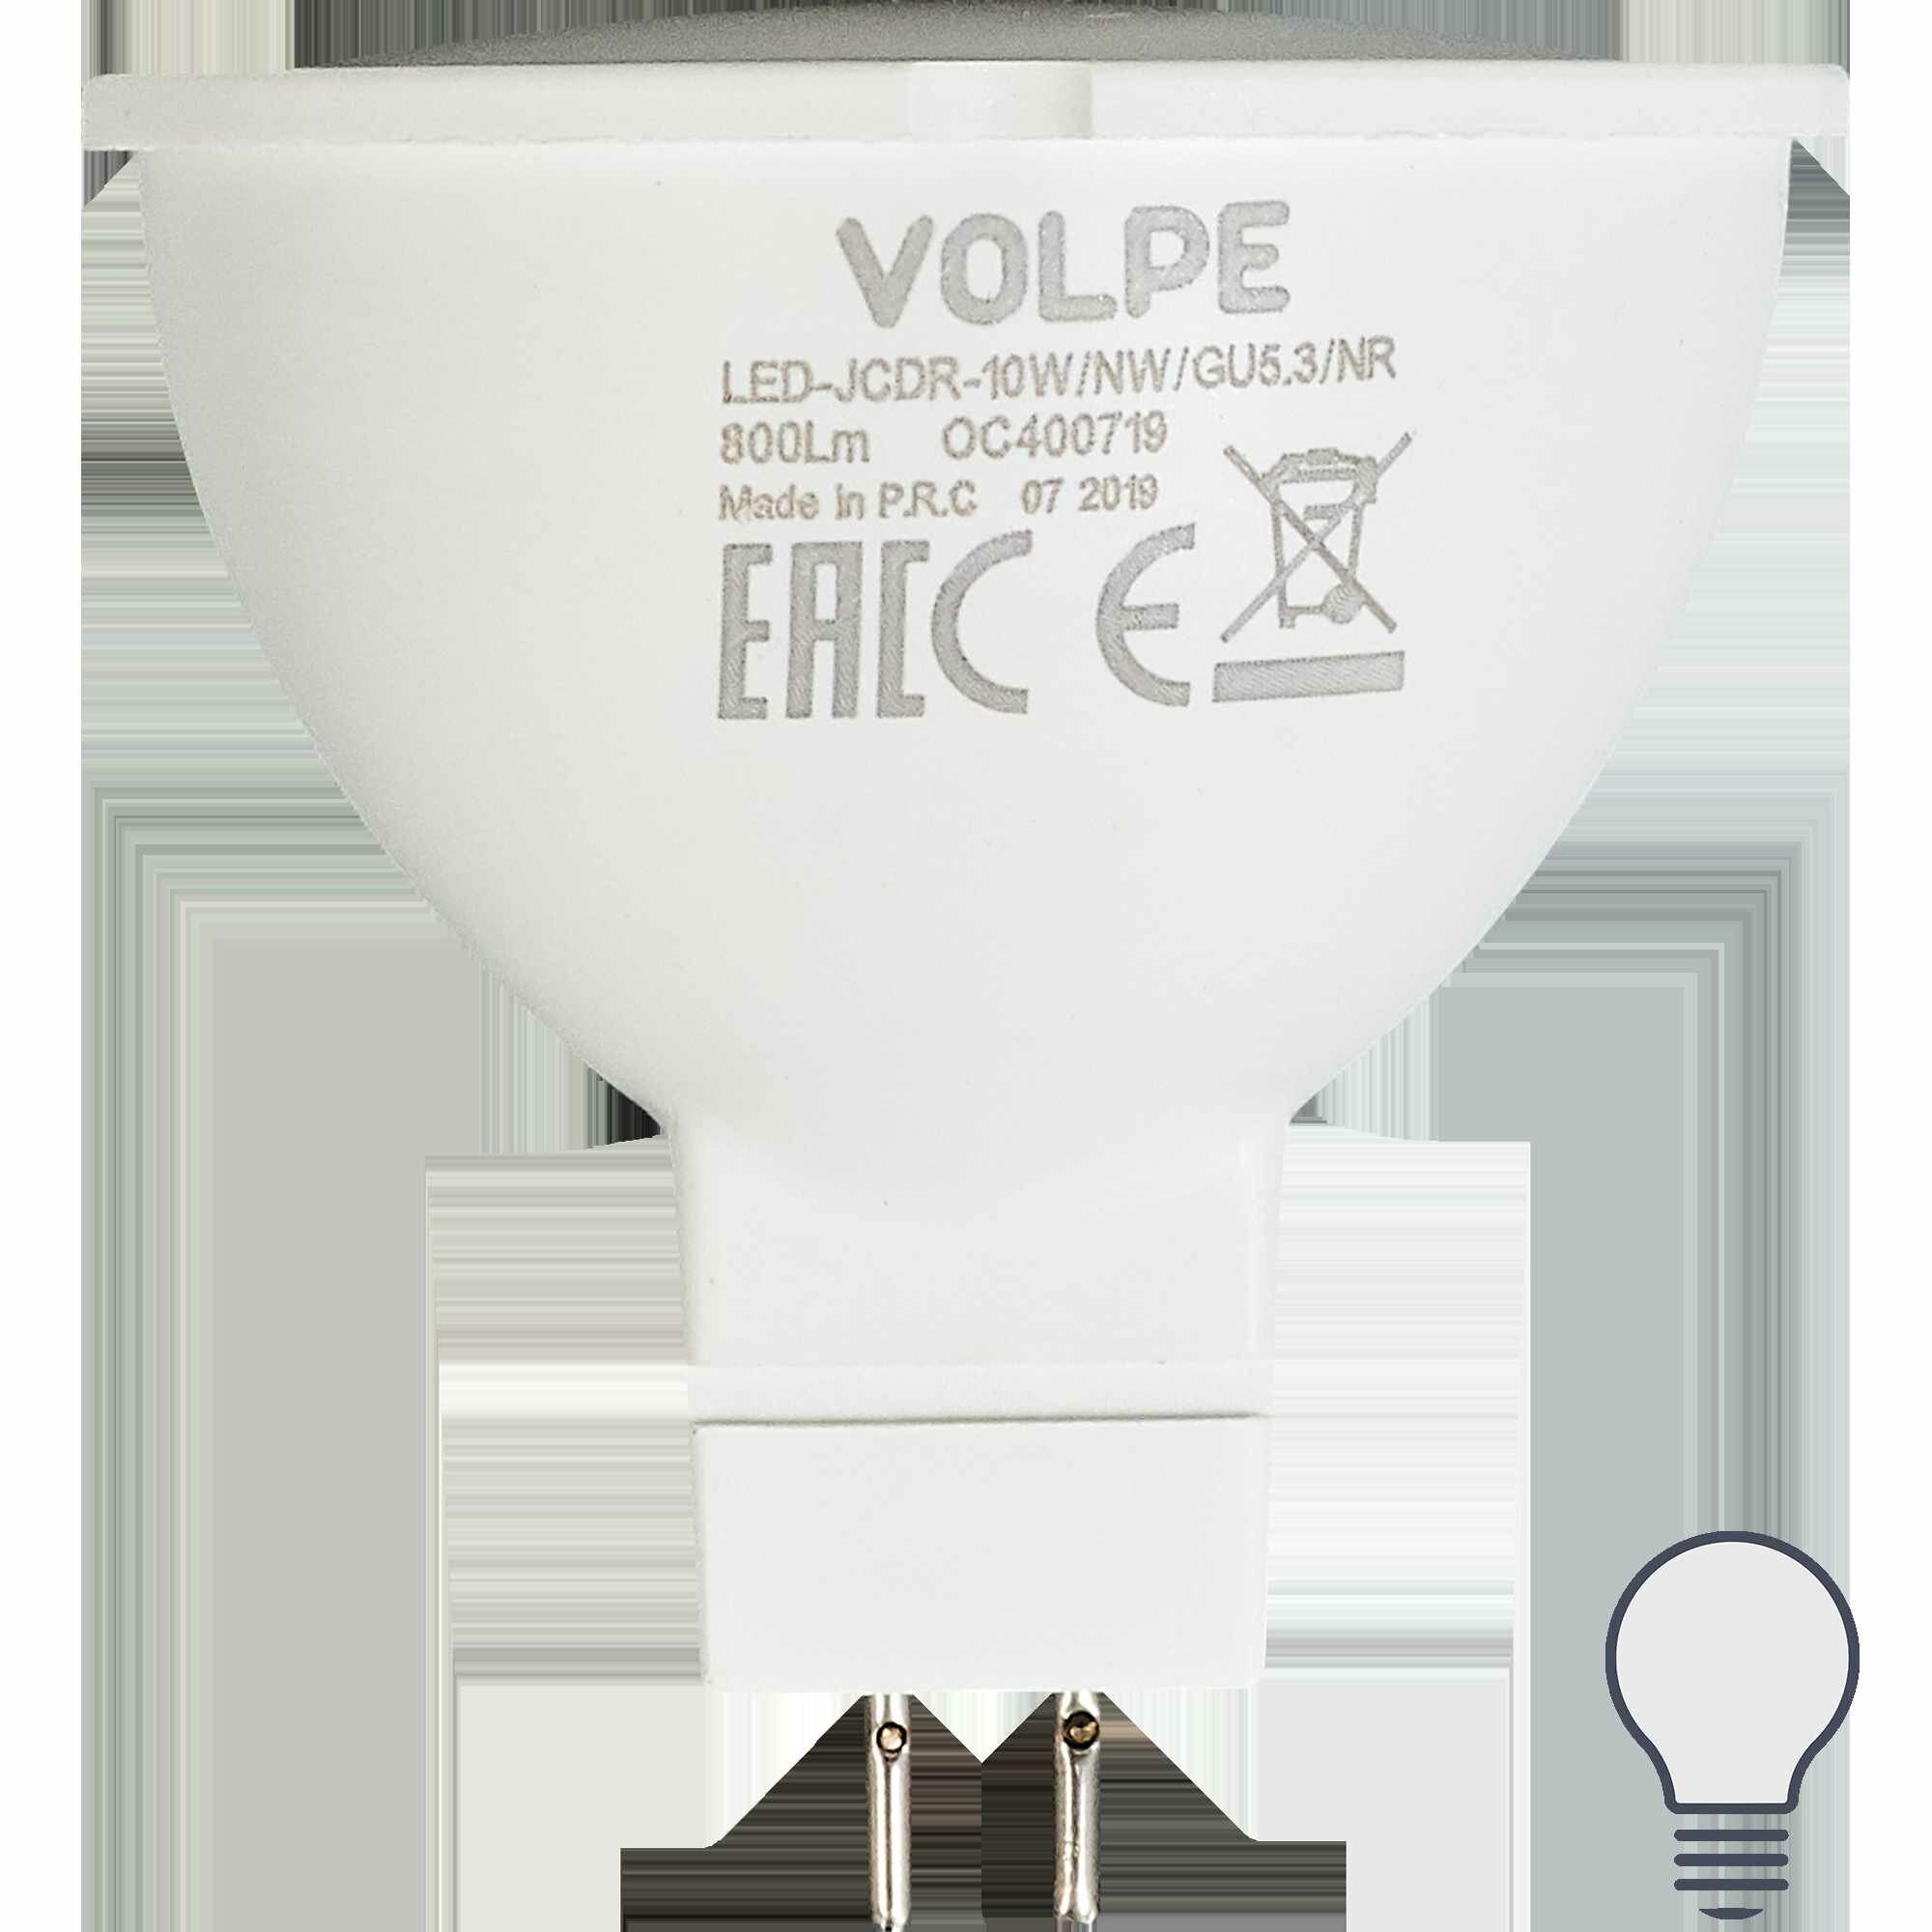 Лампа светодиодная Volpe Norma GU5.3 170-240 В 10 Вт спот 800 Лм нейтральный белый свет